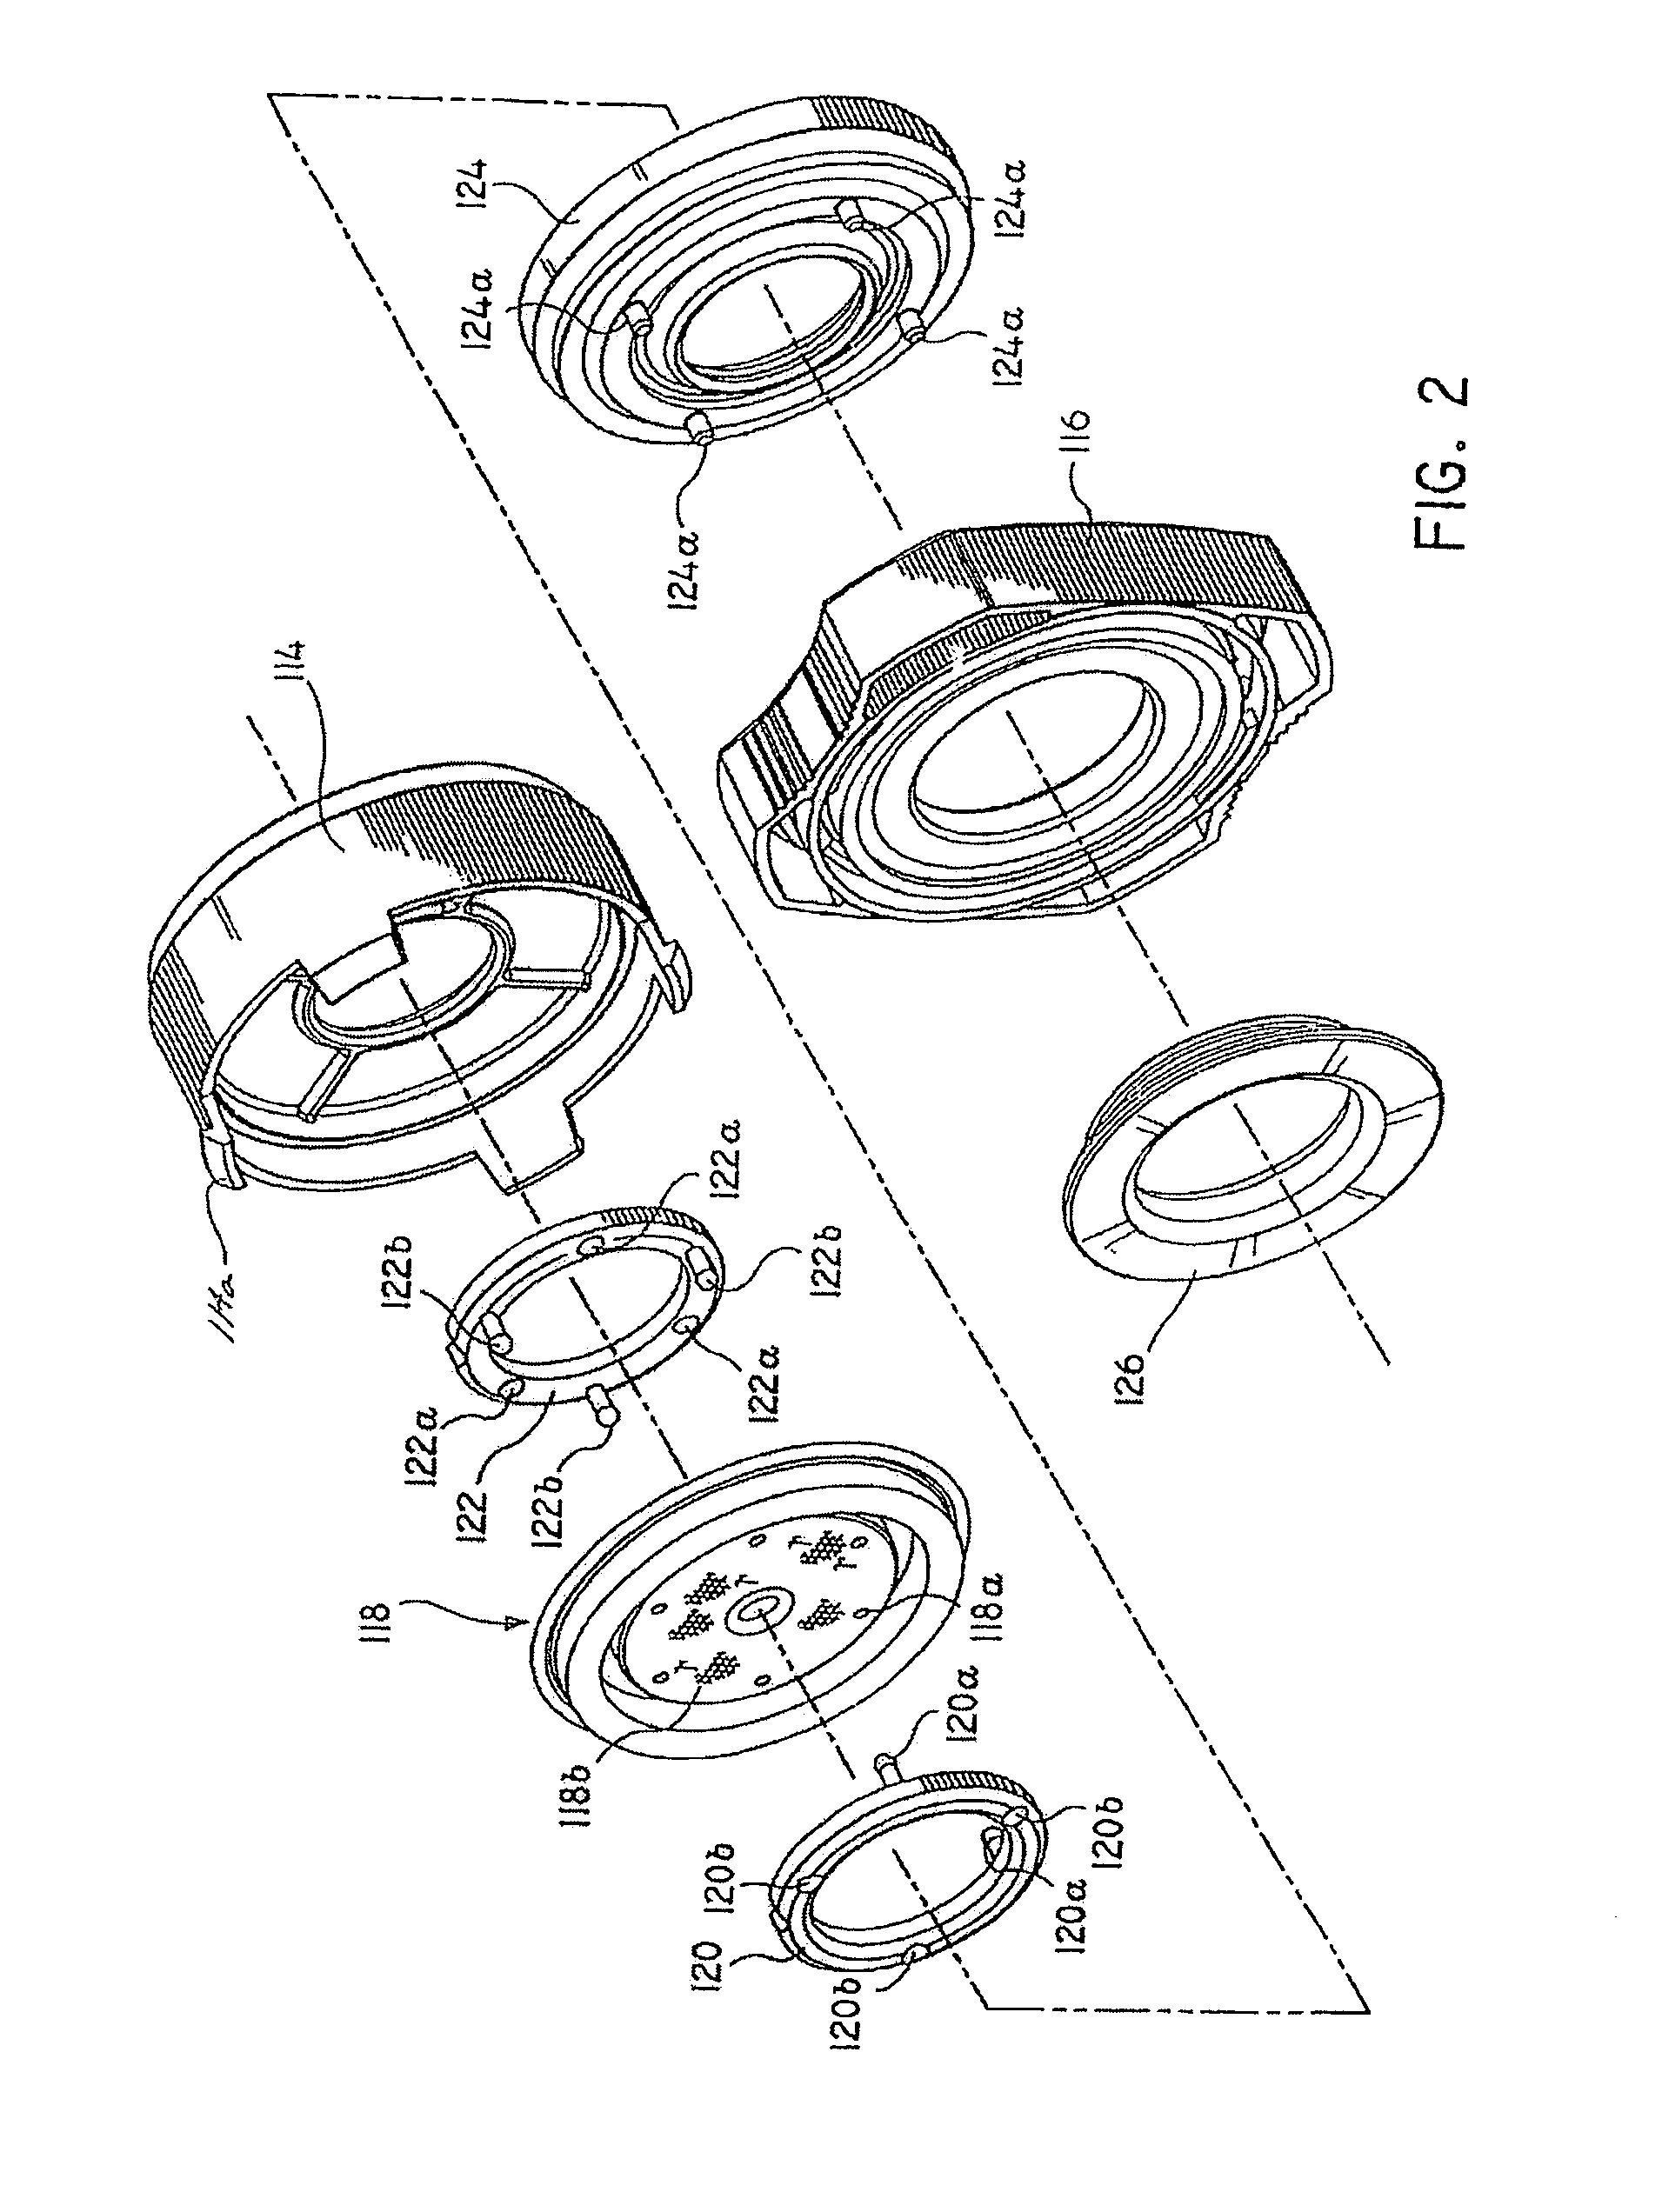 Trocar seal system